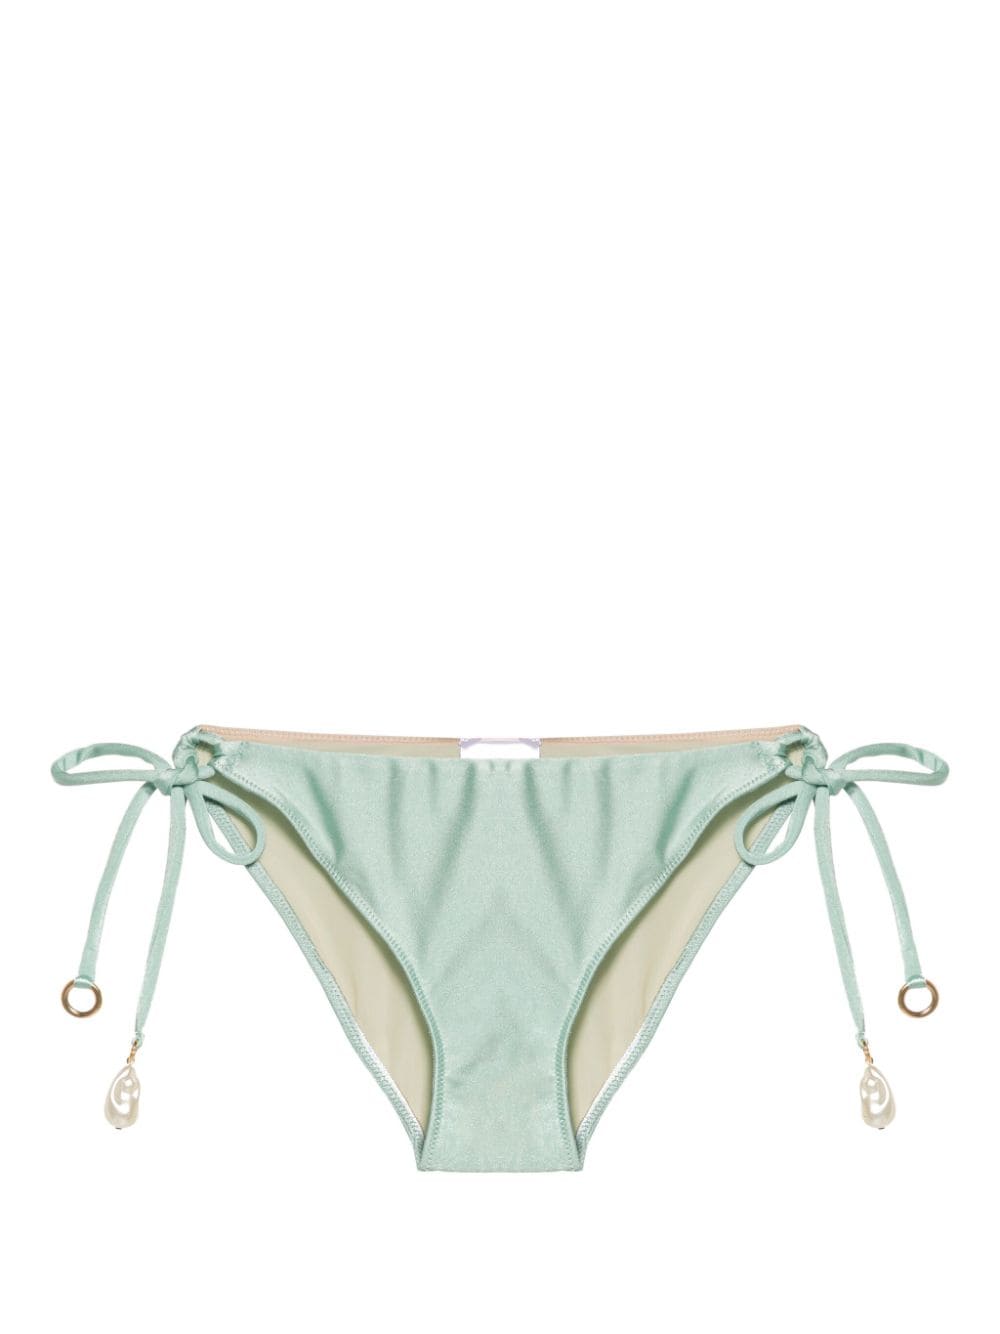 Maria Lucia Hohan Billie bikini bottoms - Green von Maria Lucia Hohan